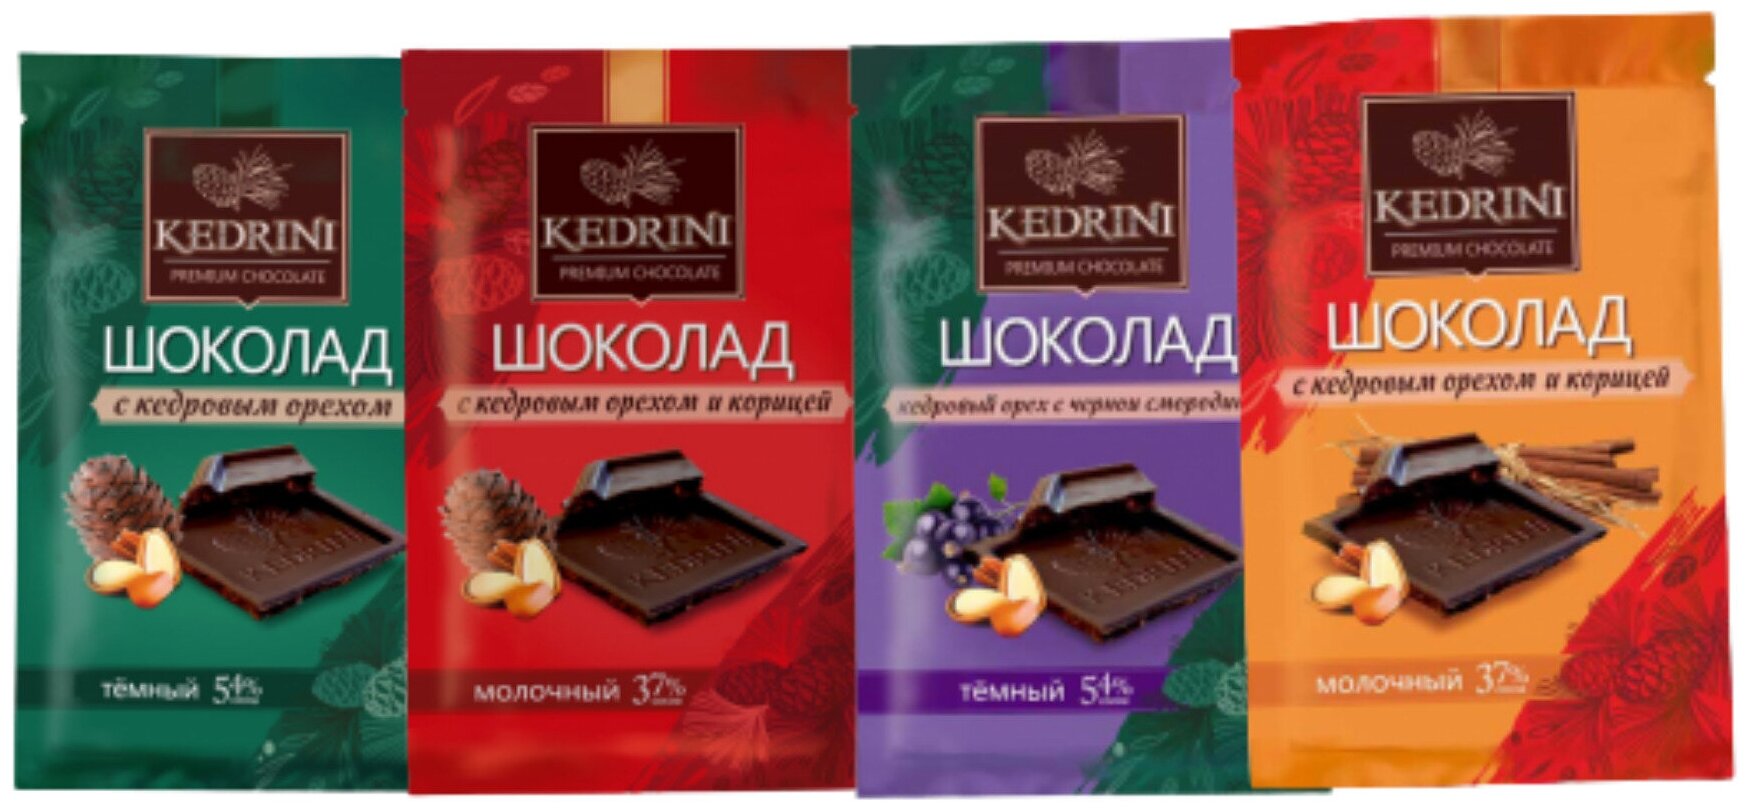 Шоколад "KEDRINI" 23 гр. (2 темных, 2 молочных)